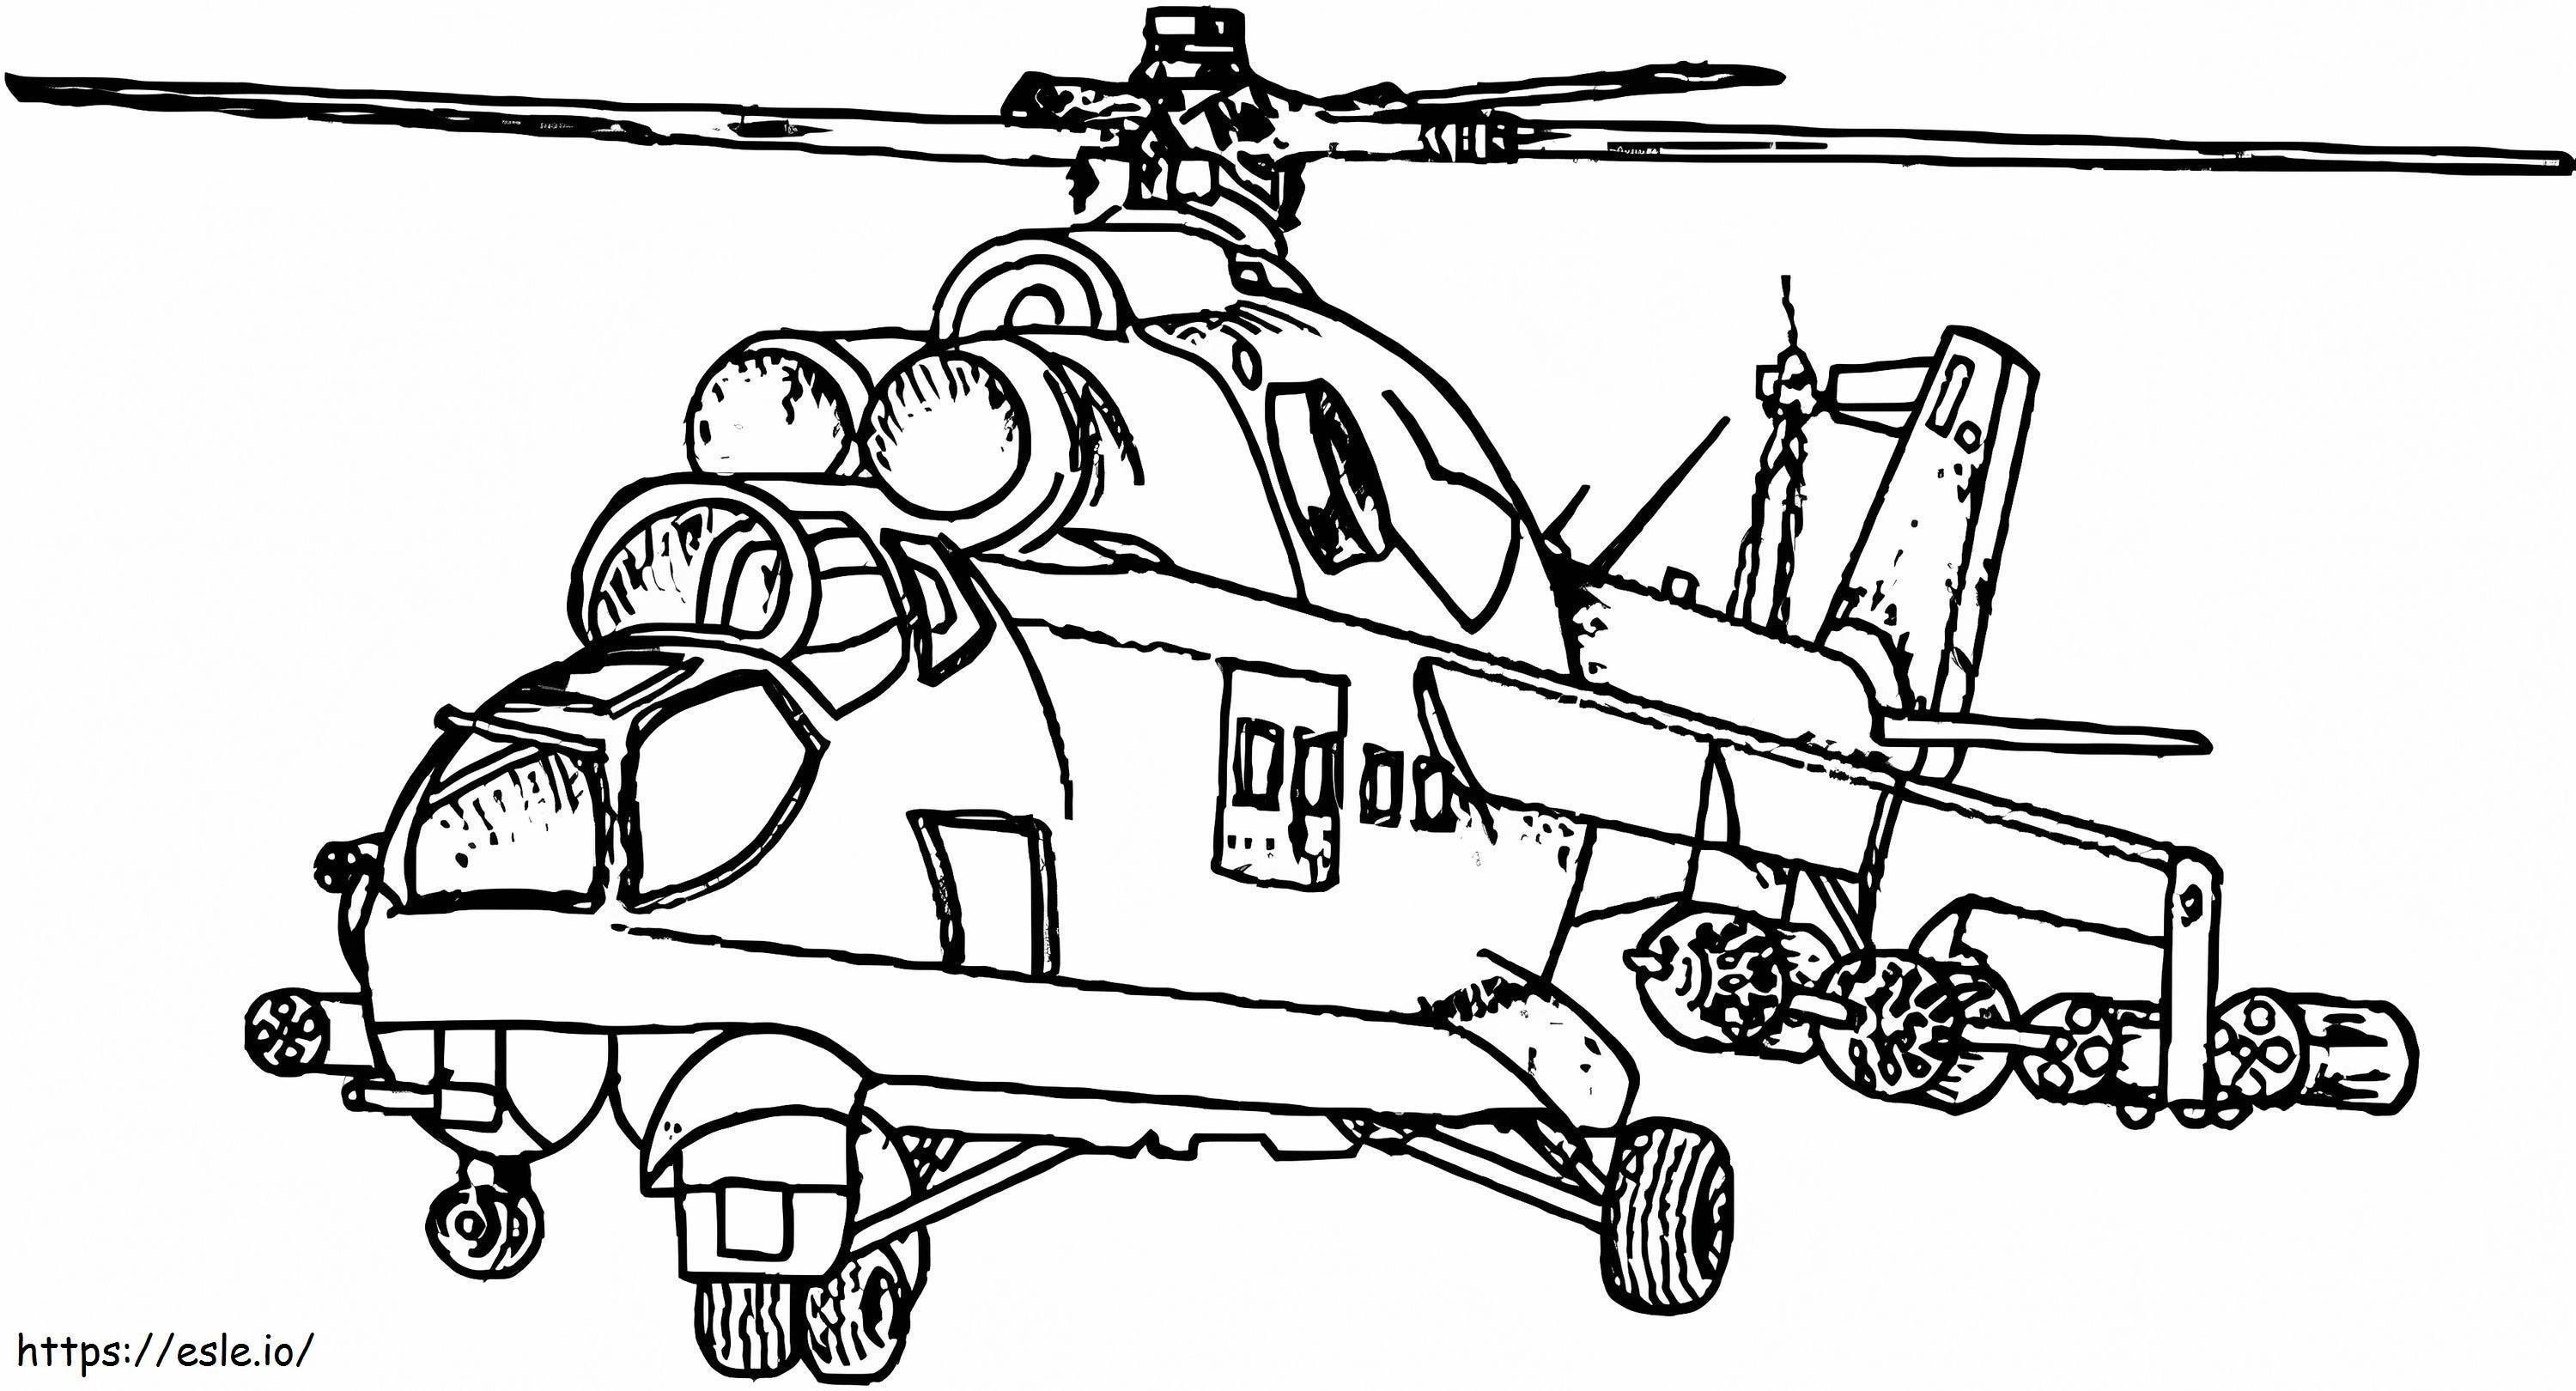 Legeraanvalshelikopter kleurplaat kleurplaat